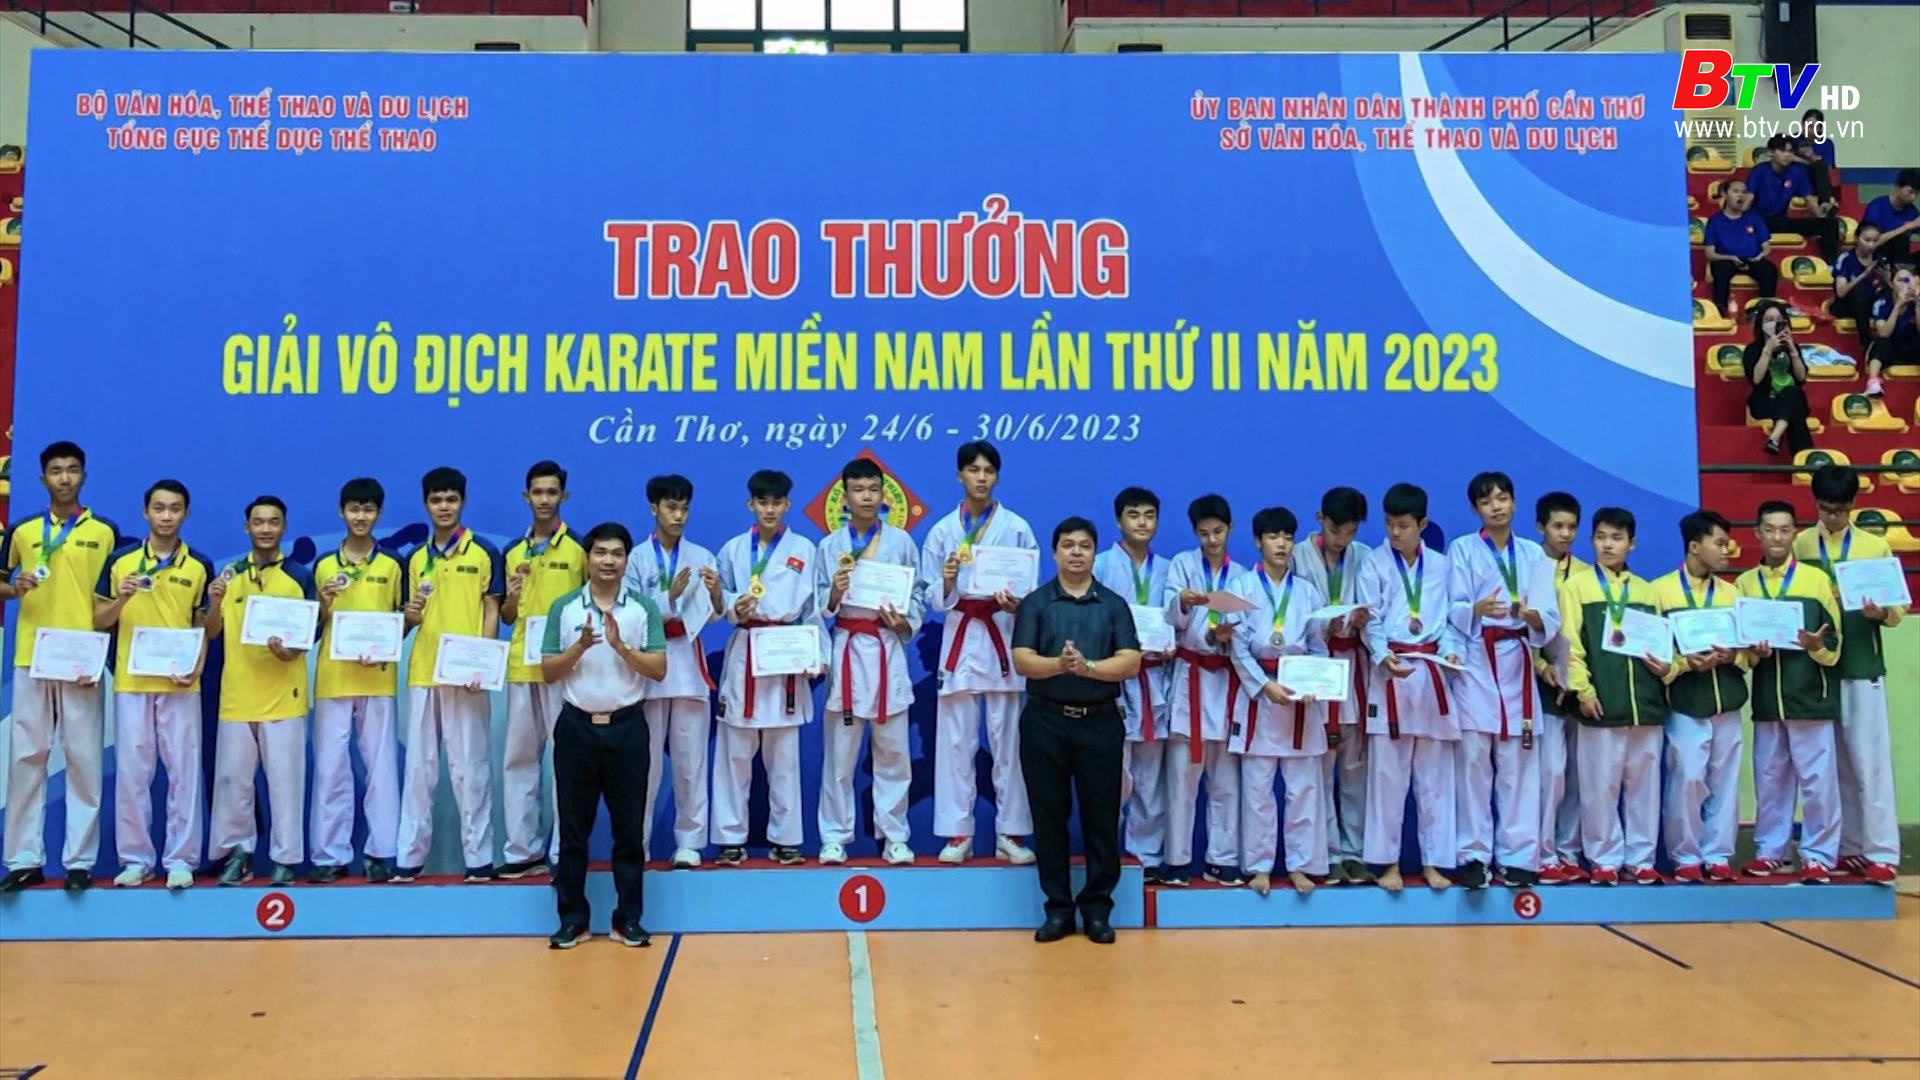 Bình Dương đạt 6 huy chương vàng tại giải vô địch Karate miền Nam